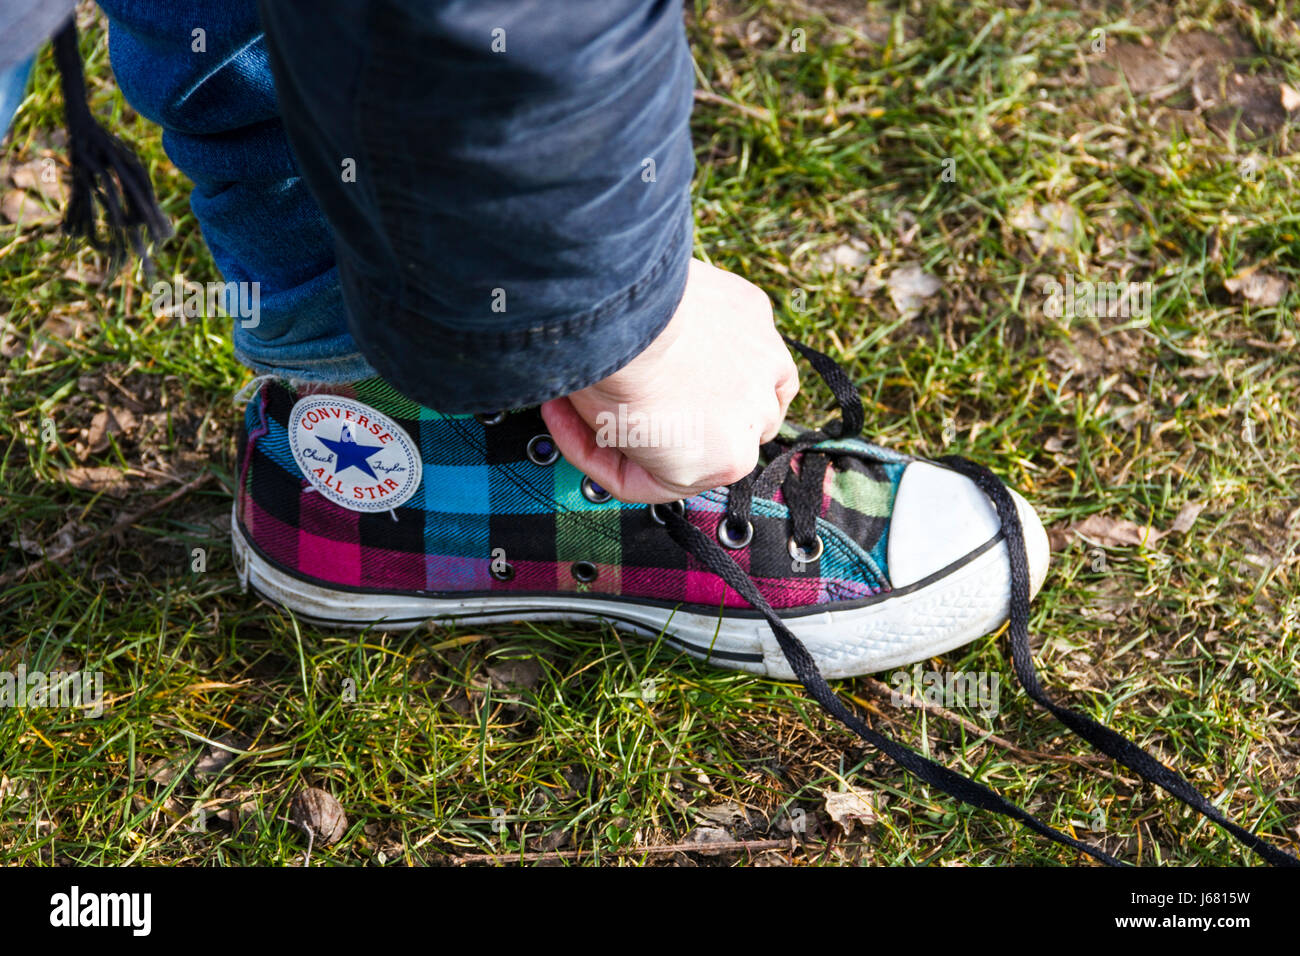 Erwachsene Person binden eine rückgängig gemachte Schuhbändern auf einem Tartan-gemusterten Converse All Star' Schuh Stockfoto